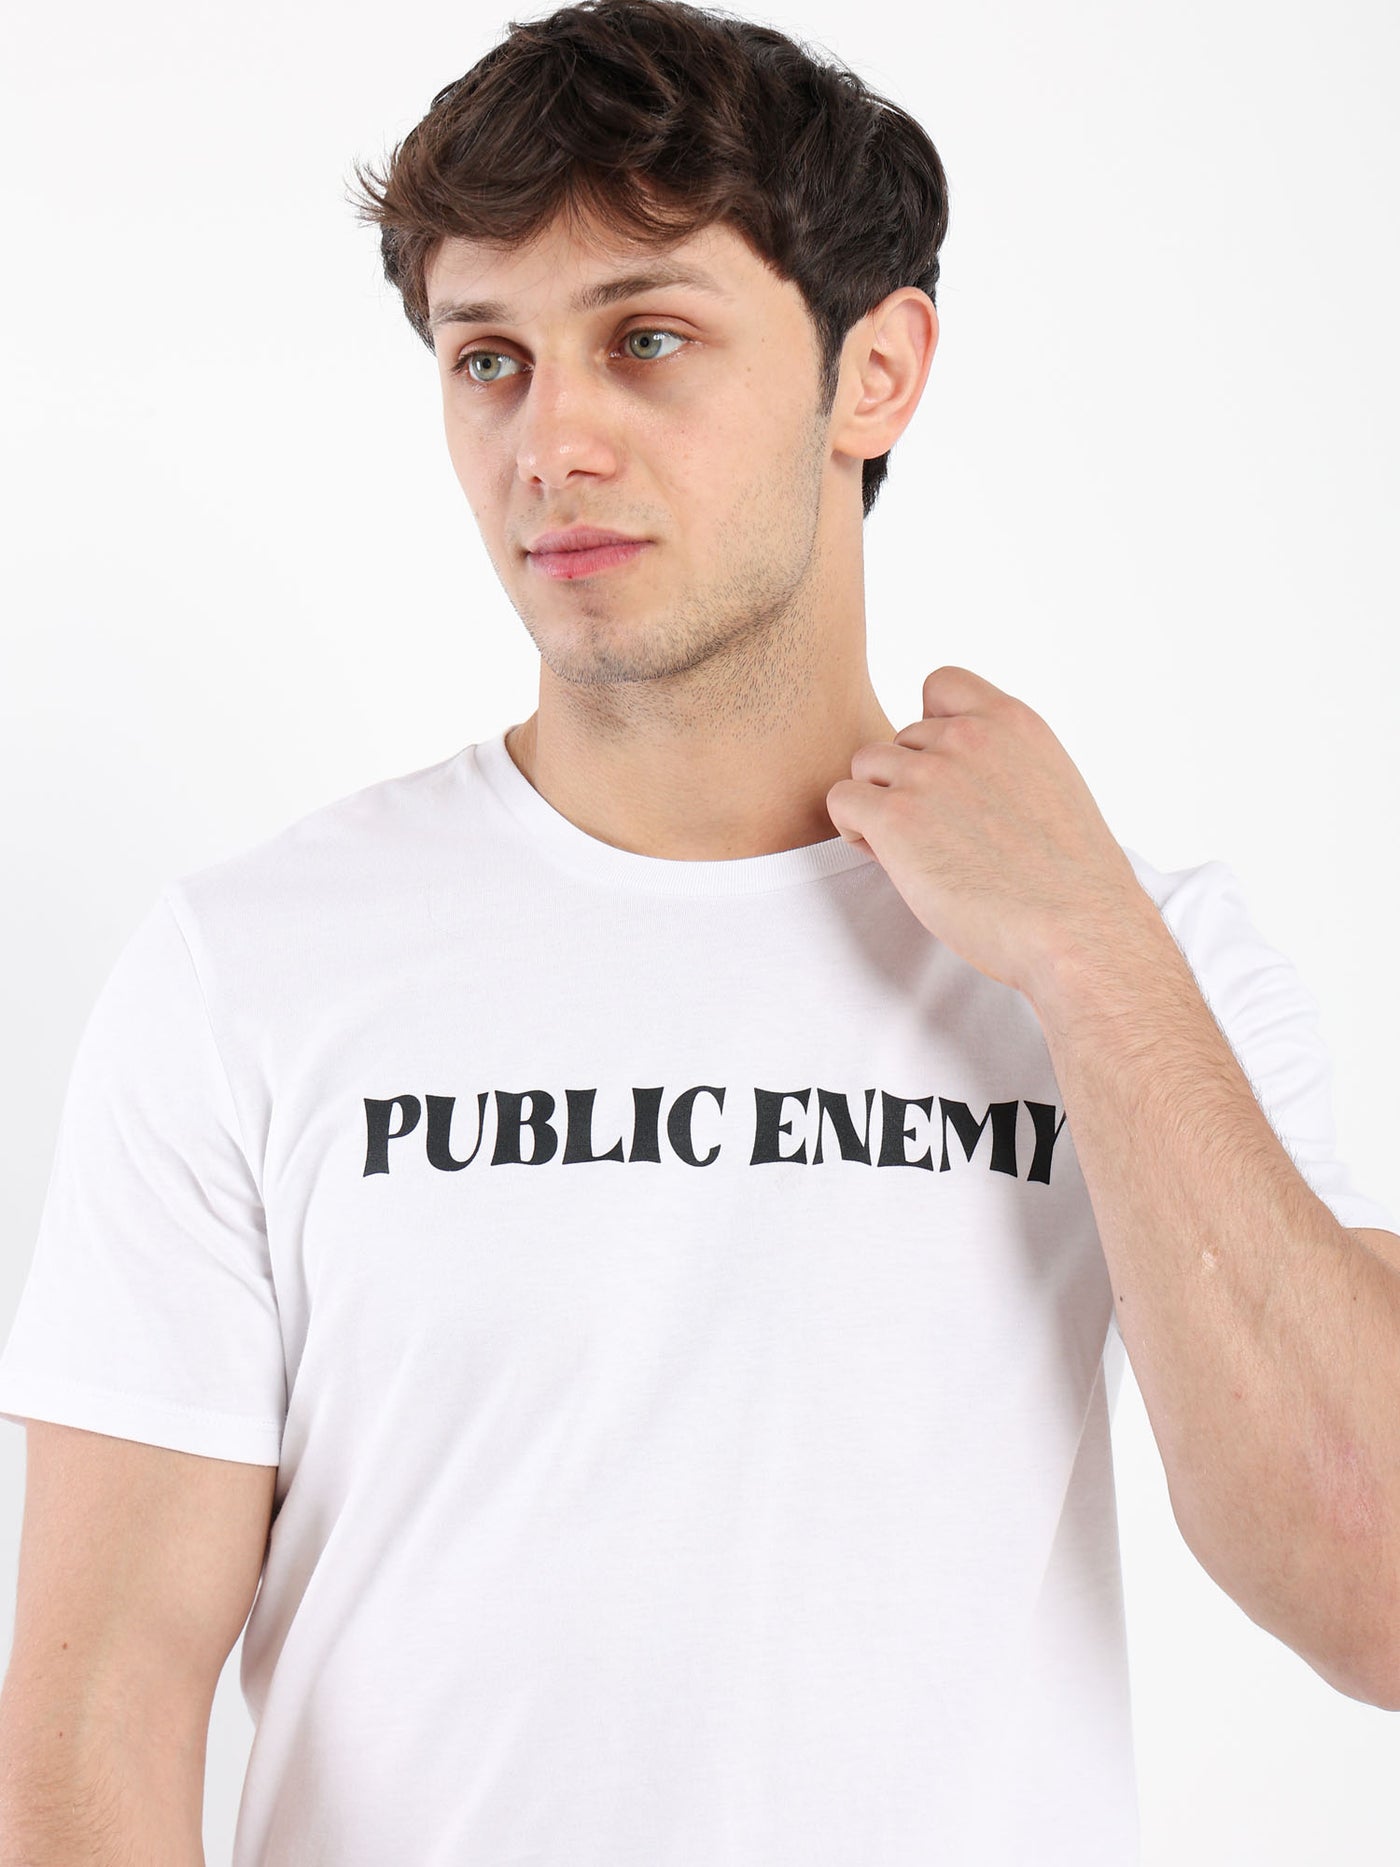 T-Shirt - "Public Enemy" Front Print - Round Neck